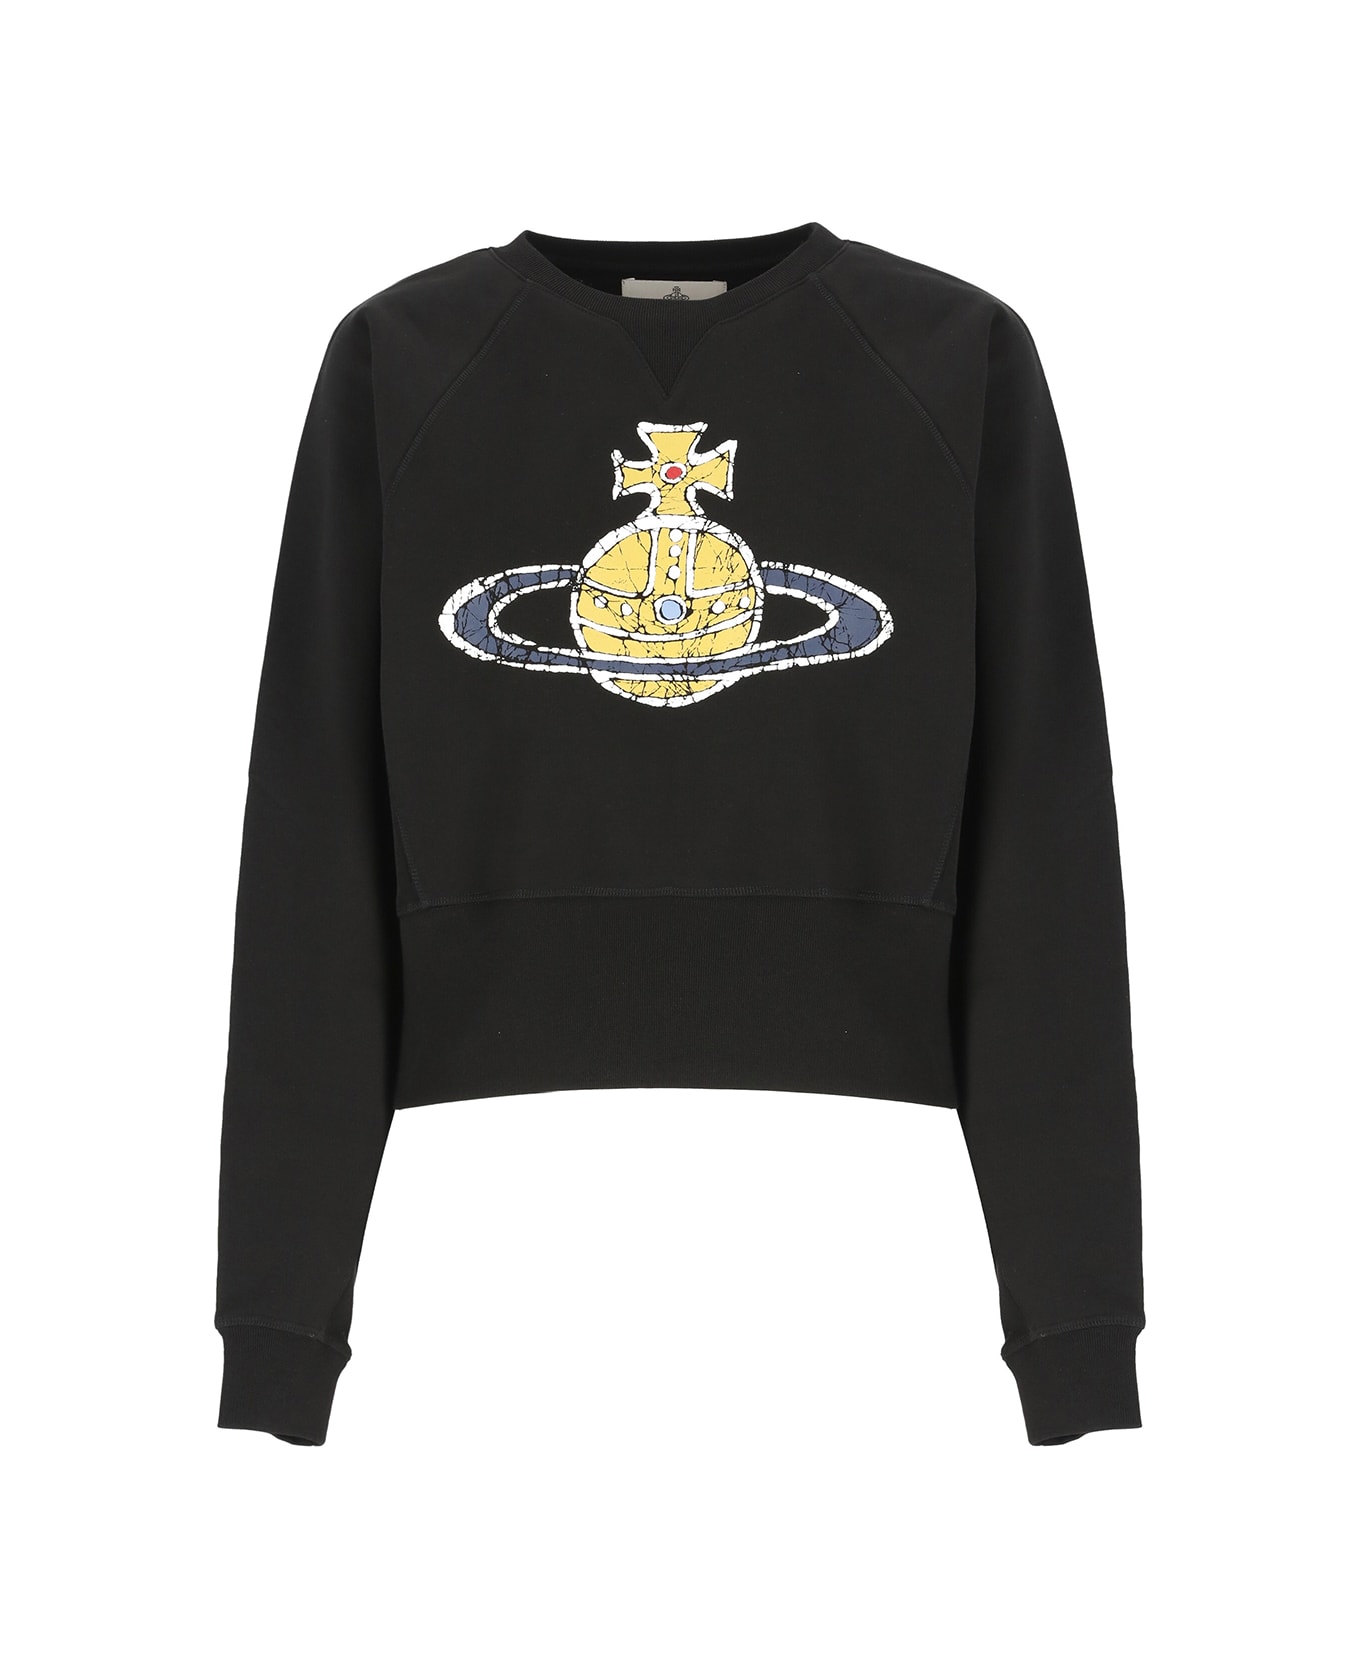 Vivienne Westwood Time Machine Athletic Sweatshirt - Black フリース